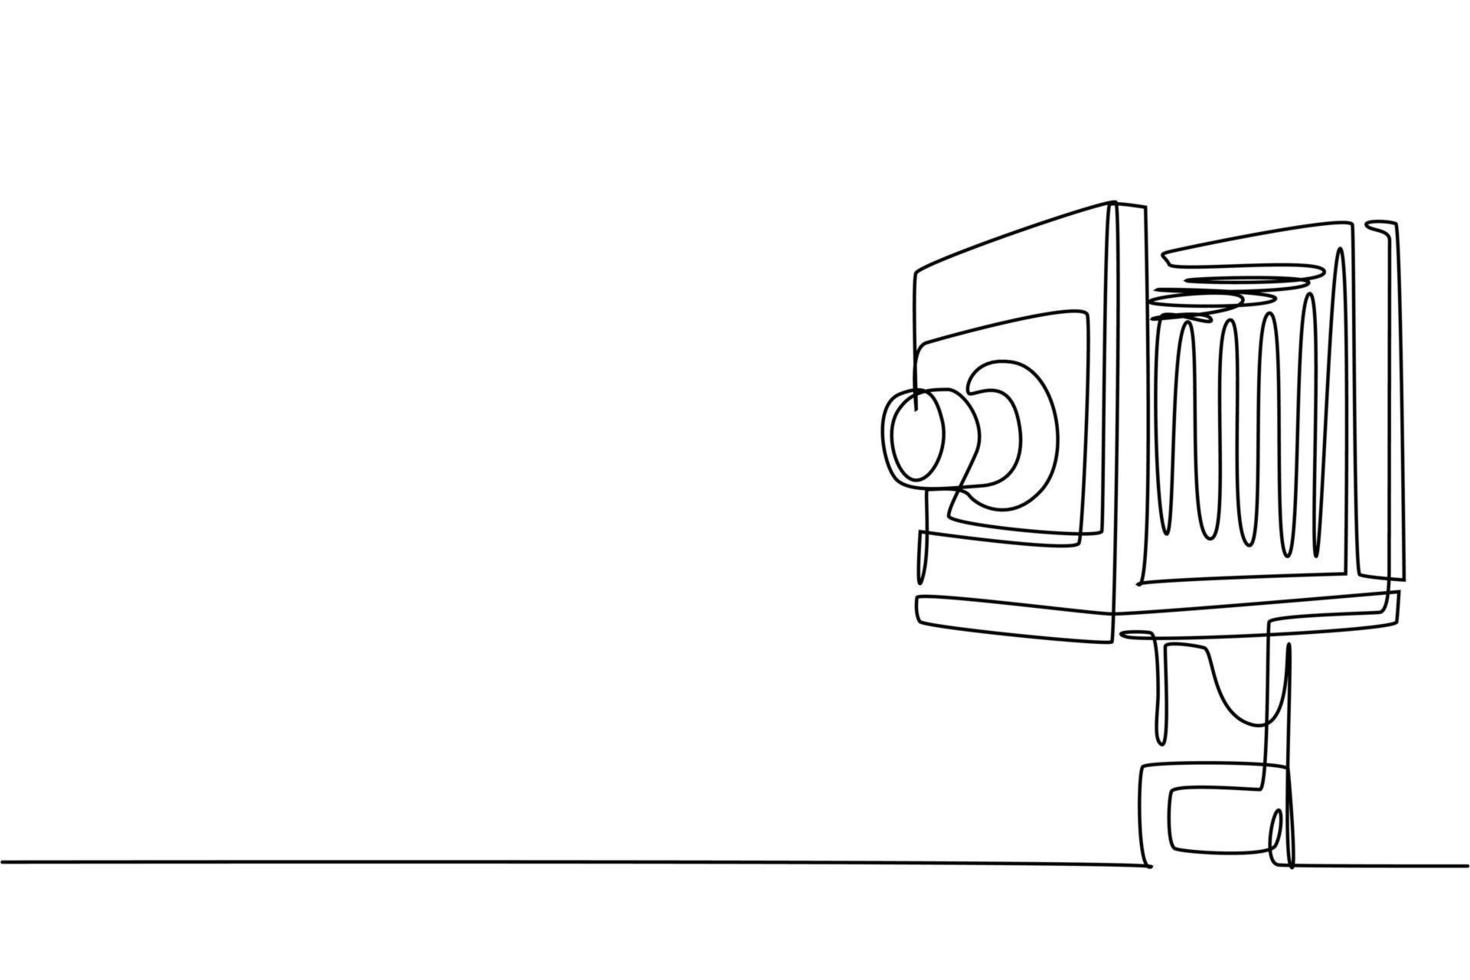 un disegno a linea continua di un vecchio formato medio di una vecchia fotocamera a pellicola retrò. vintage classico antico fotografia attrezzatura concetto linea singola disegnare design grafico illustrazione vettoriale